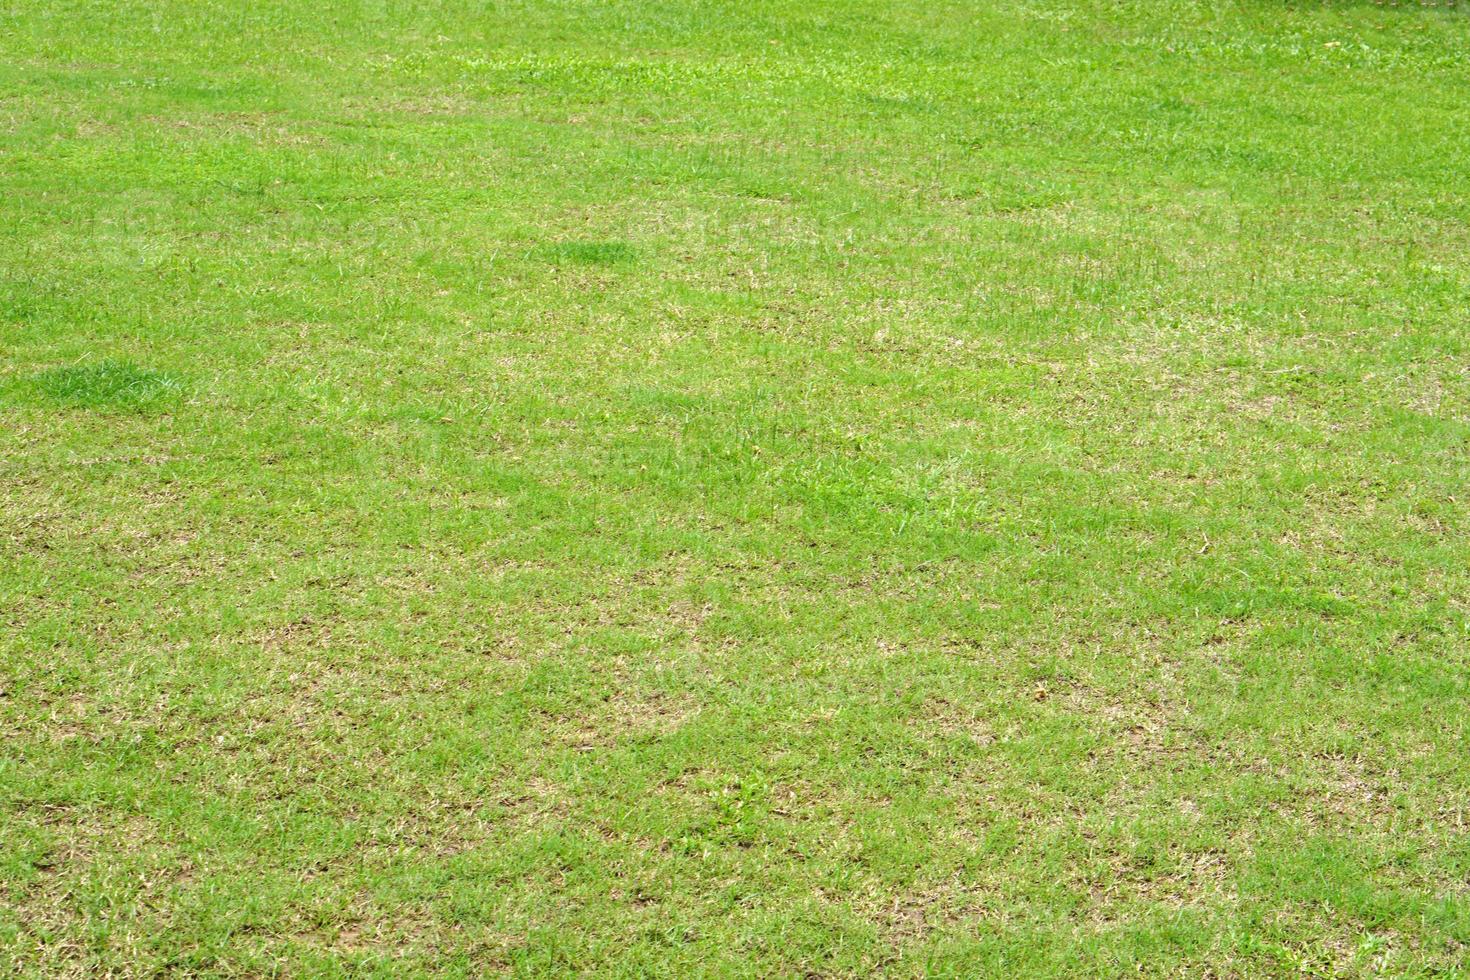 groen gras in het stadion foto